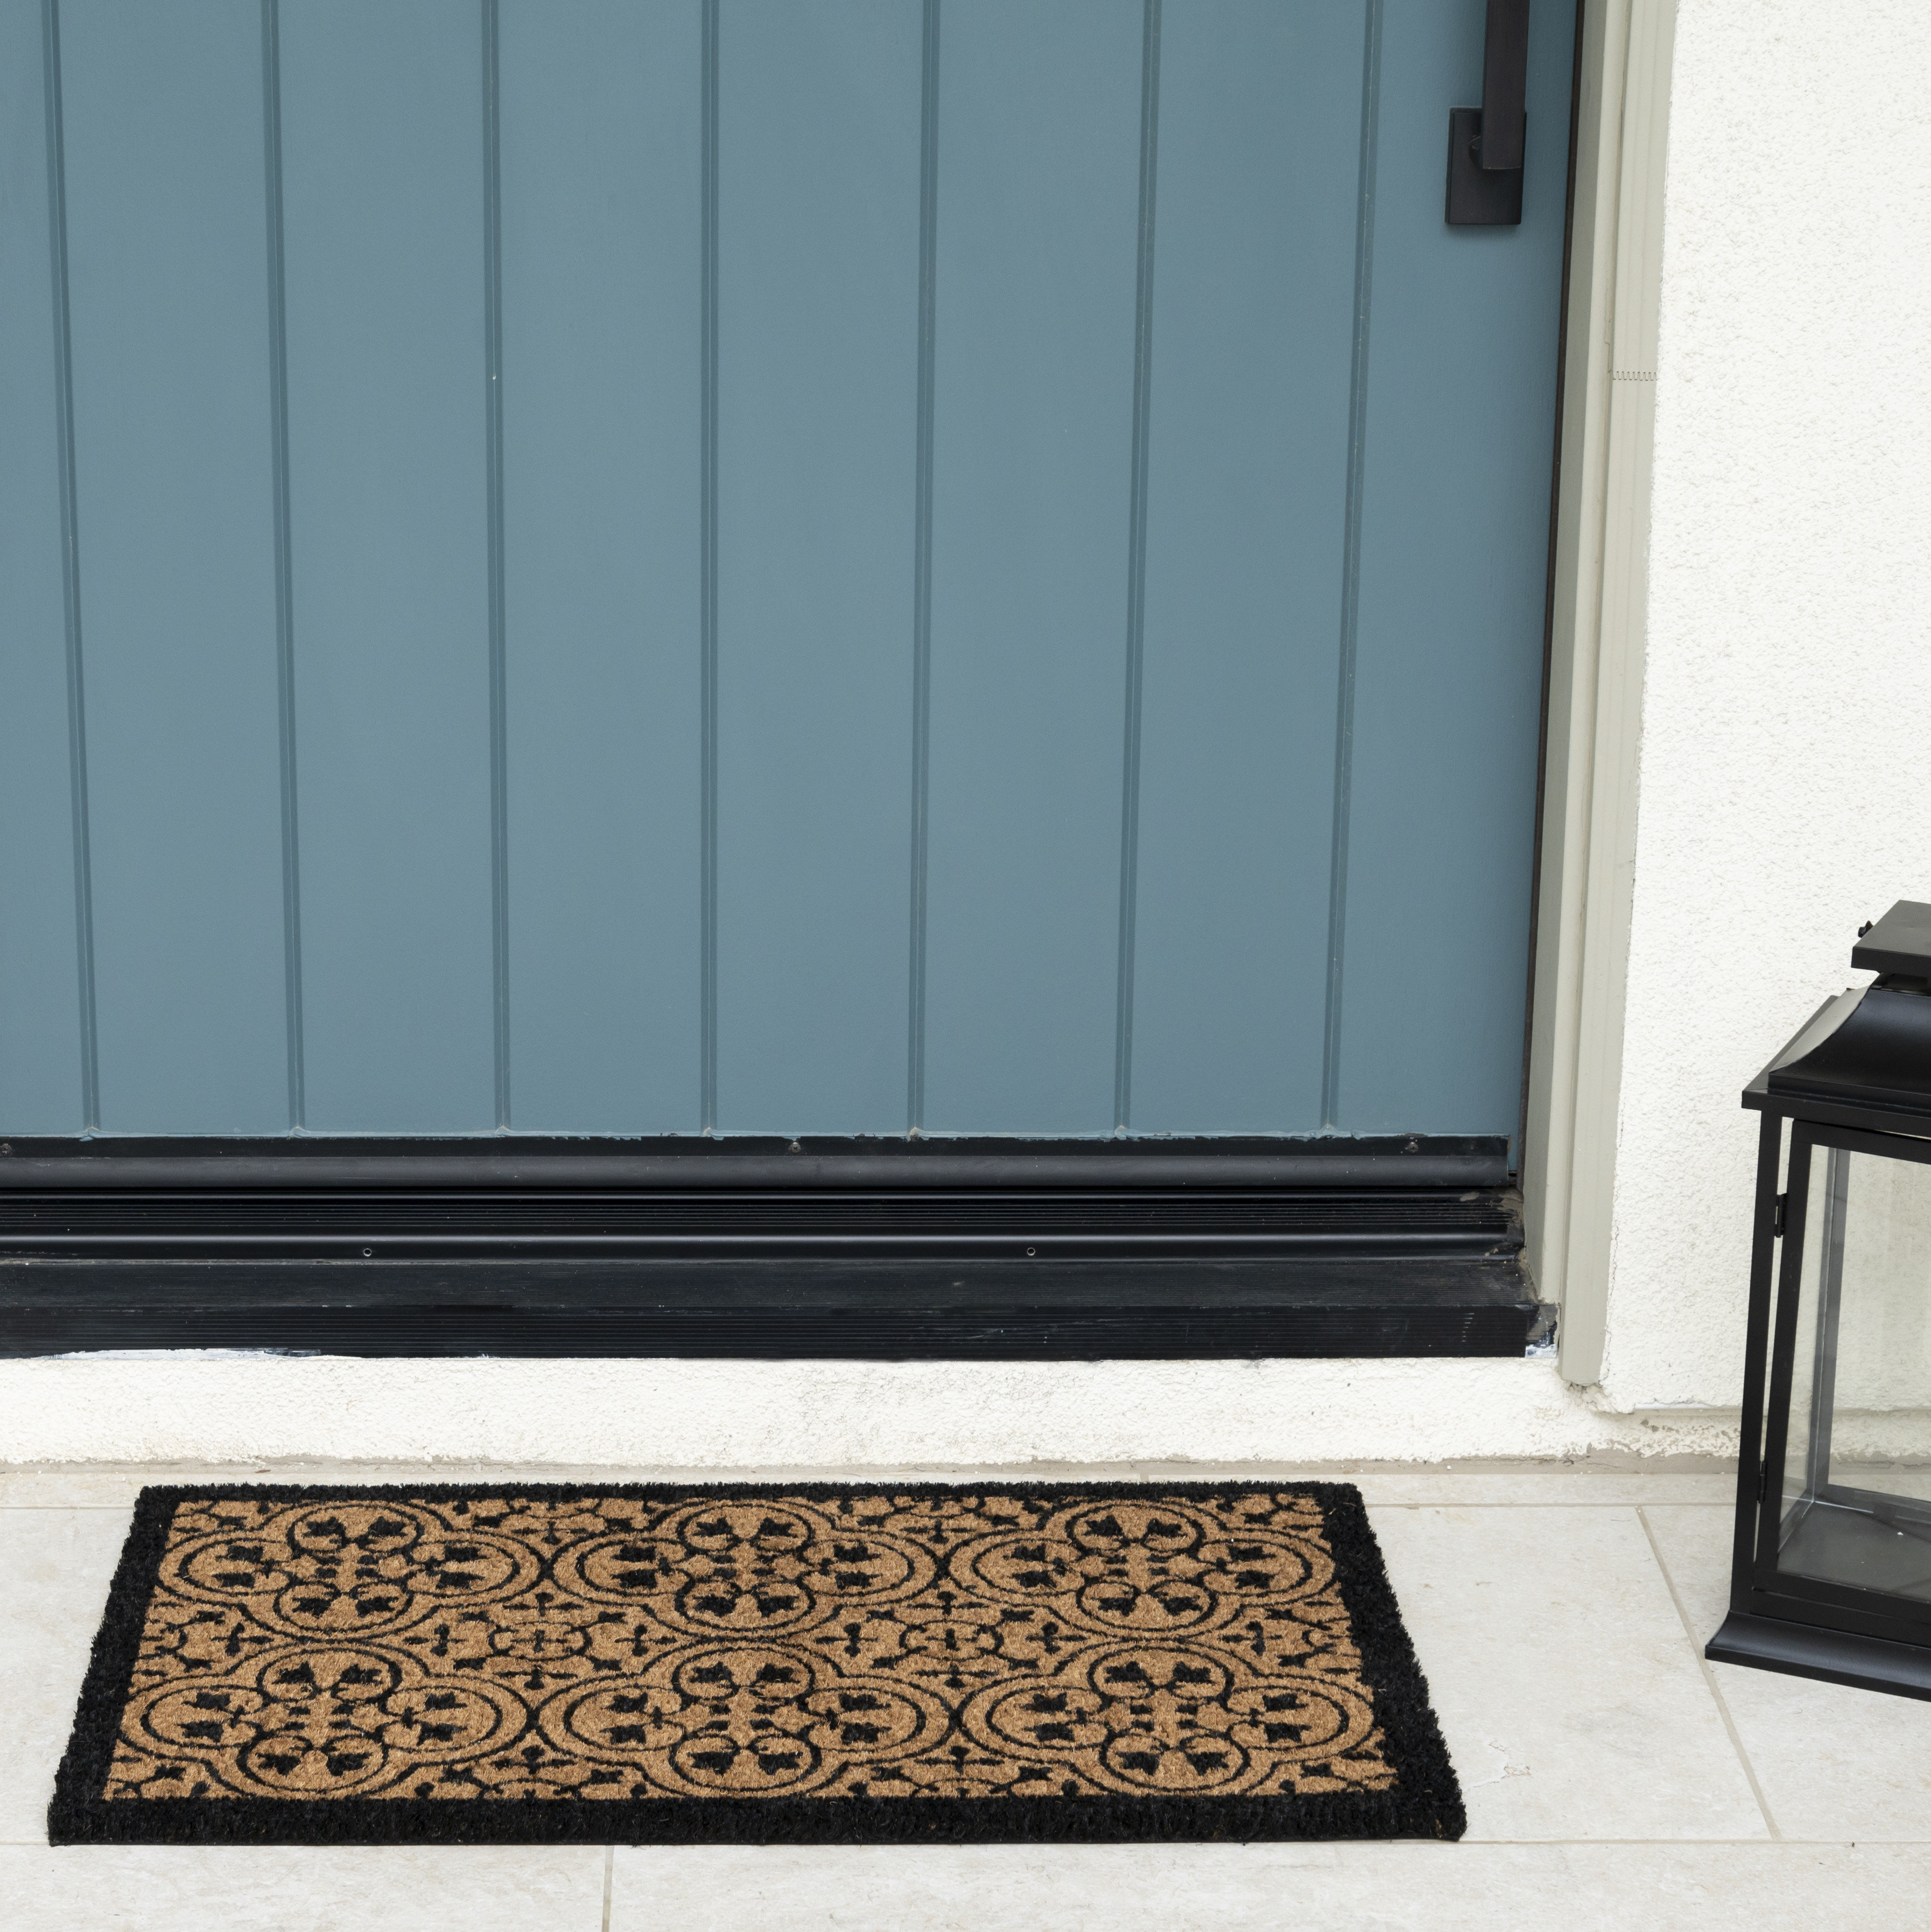 Non Slip Rubber Door Mat With Coir Inserts Welcome Floor Entrance